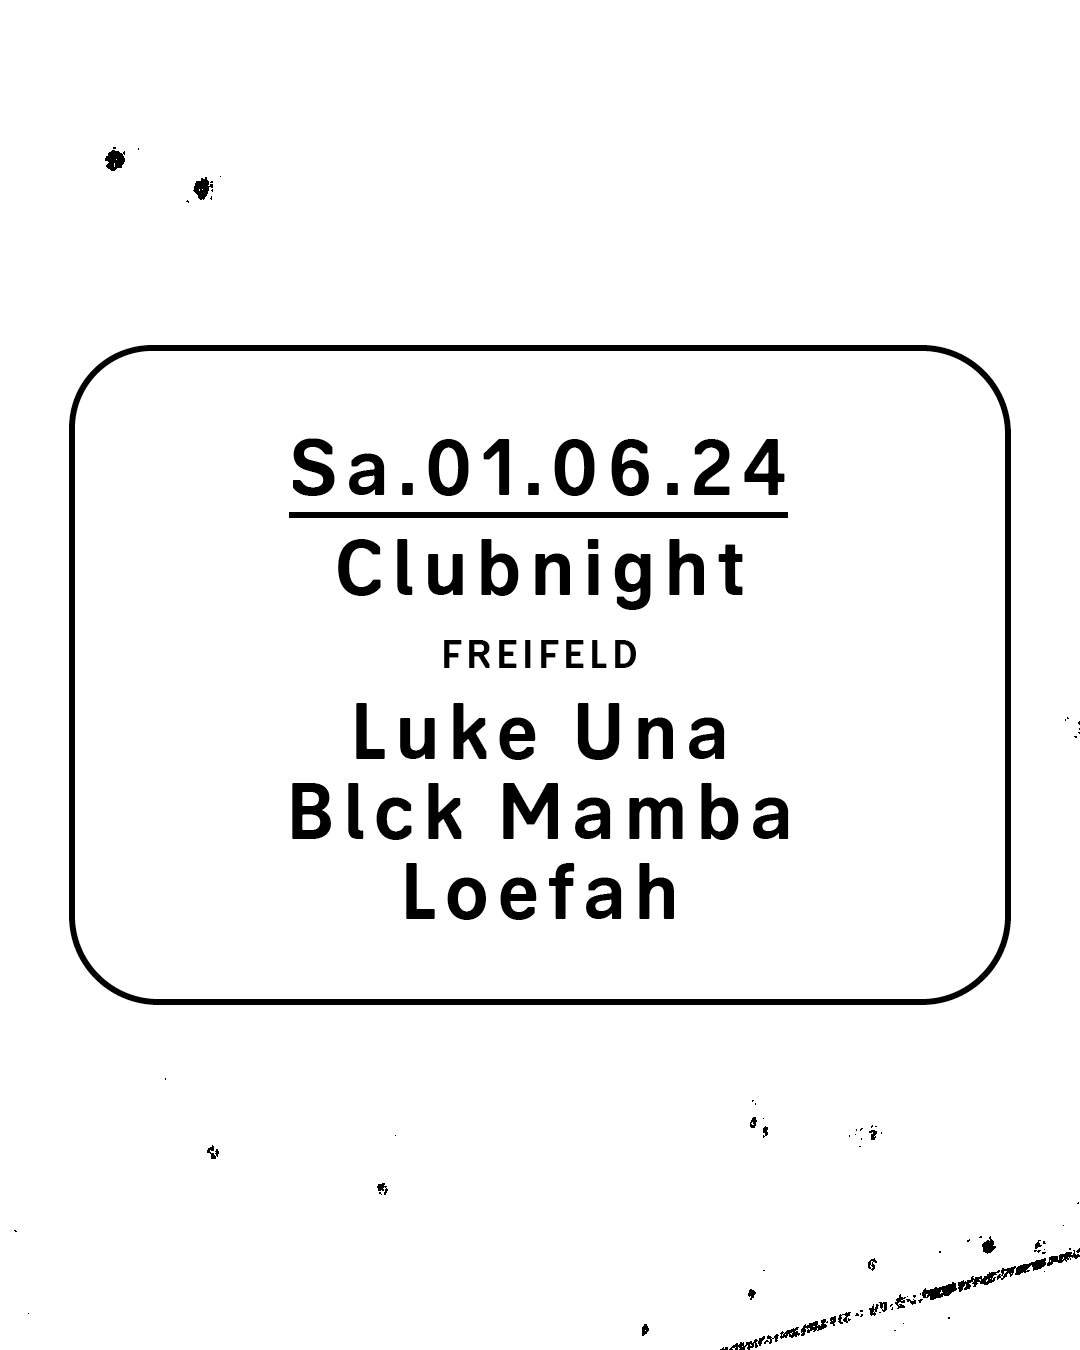 Clubnight - Luke Una, Blck Mamba, Loefah - フライヤー裏